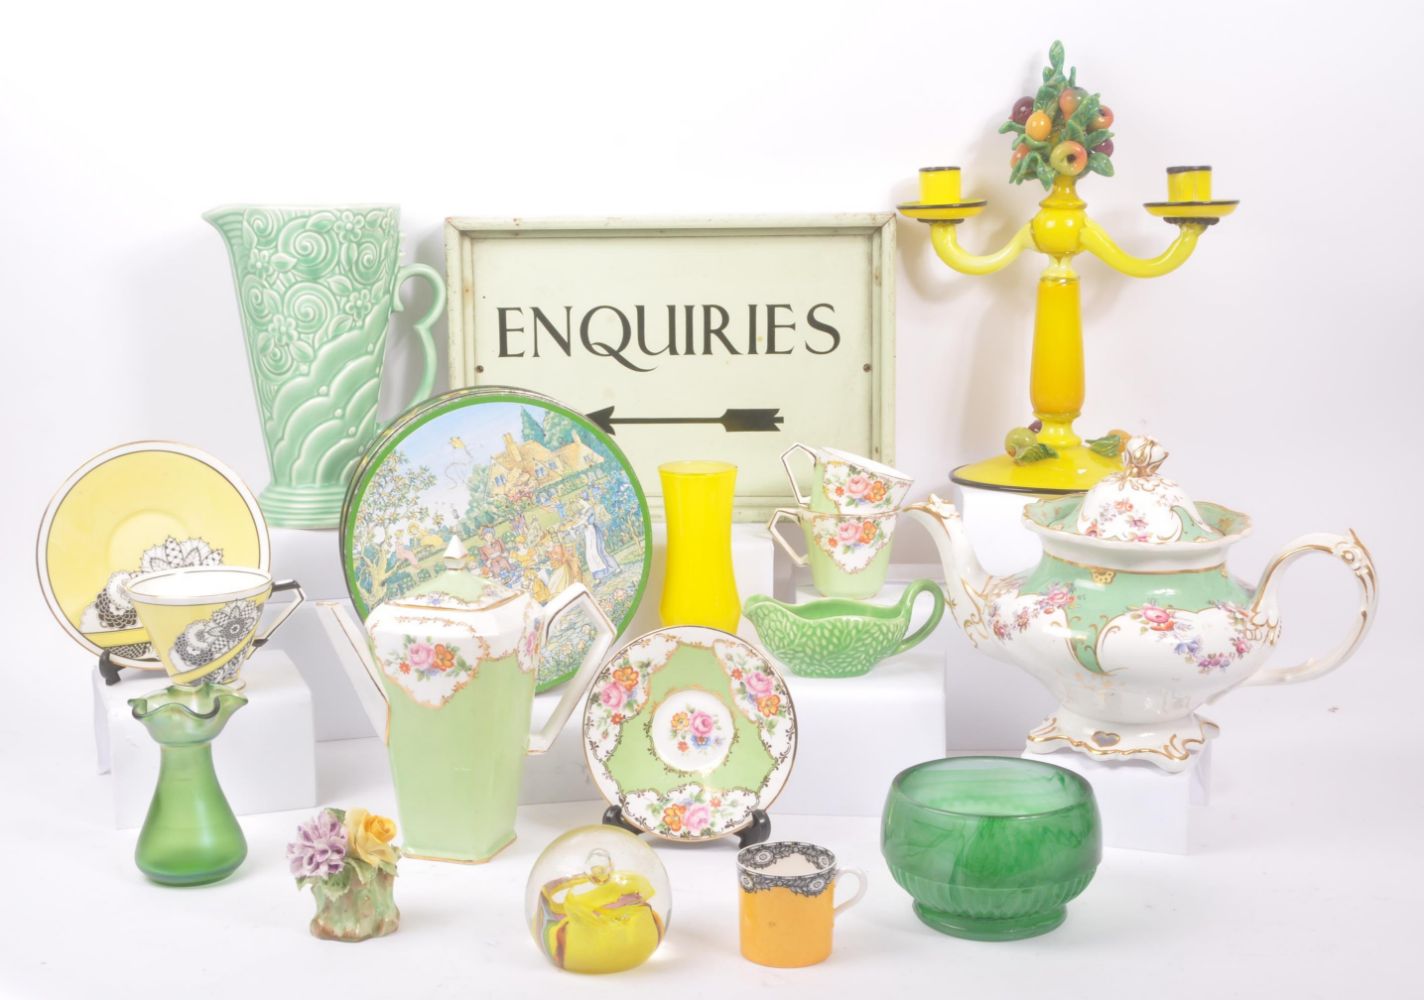 Online Antiques & Collectables - Ceramics, Collectables, Music, Memorabilia & Ephemera